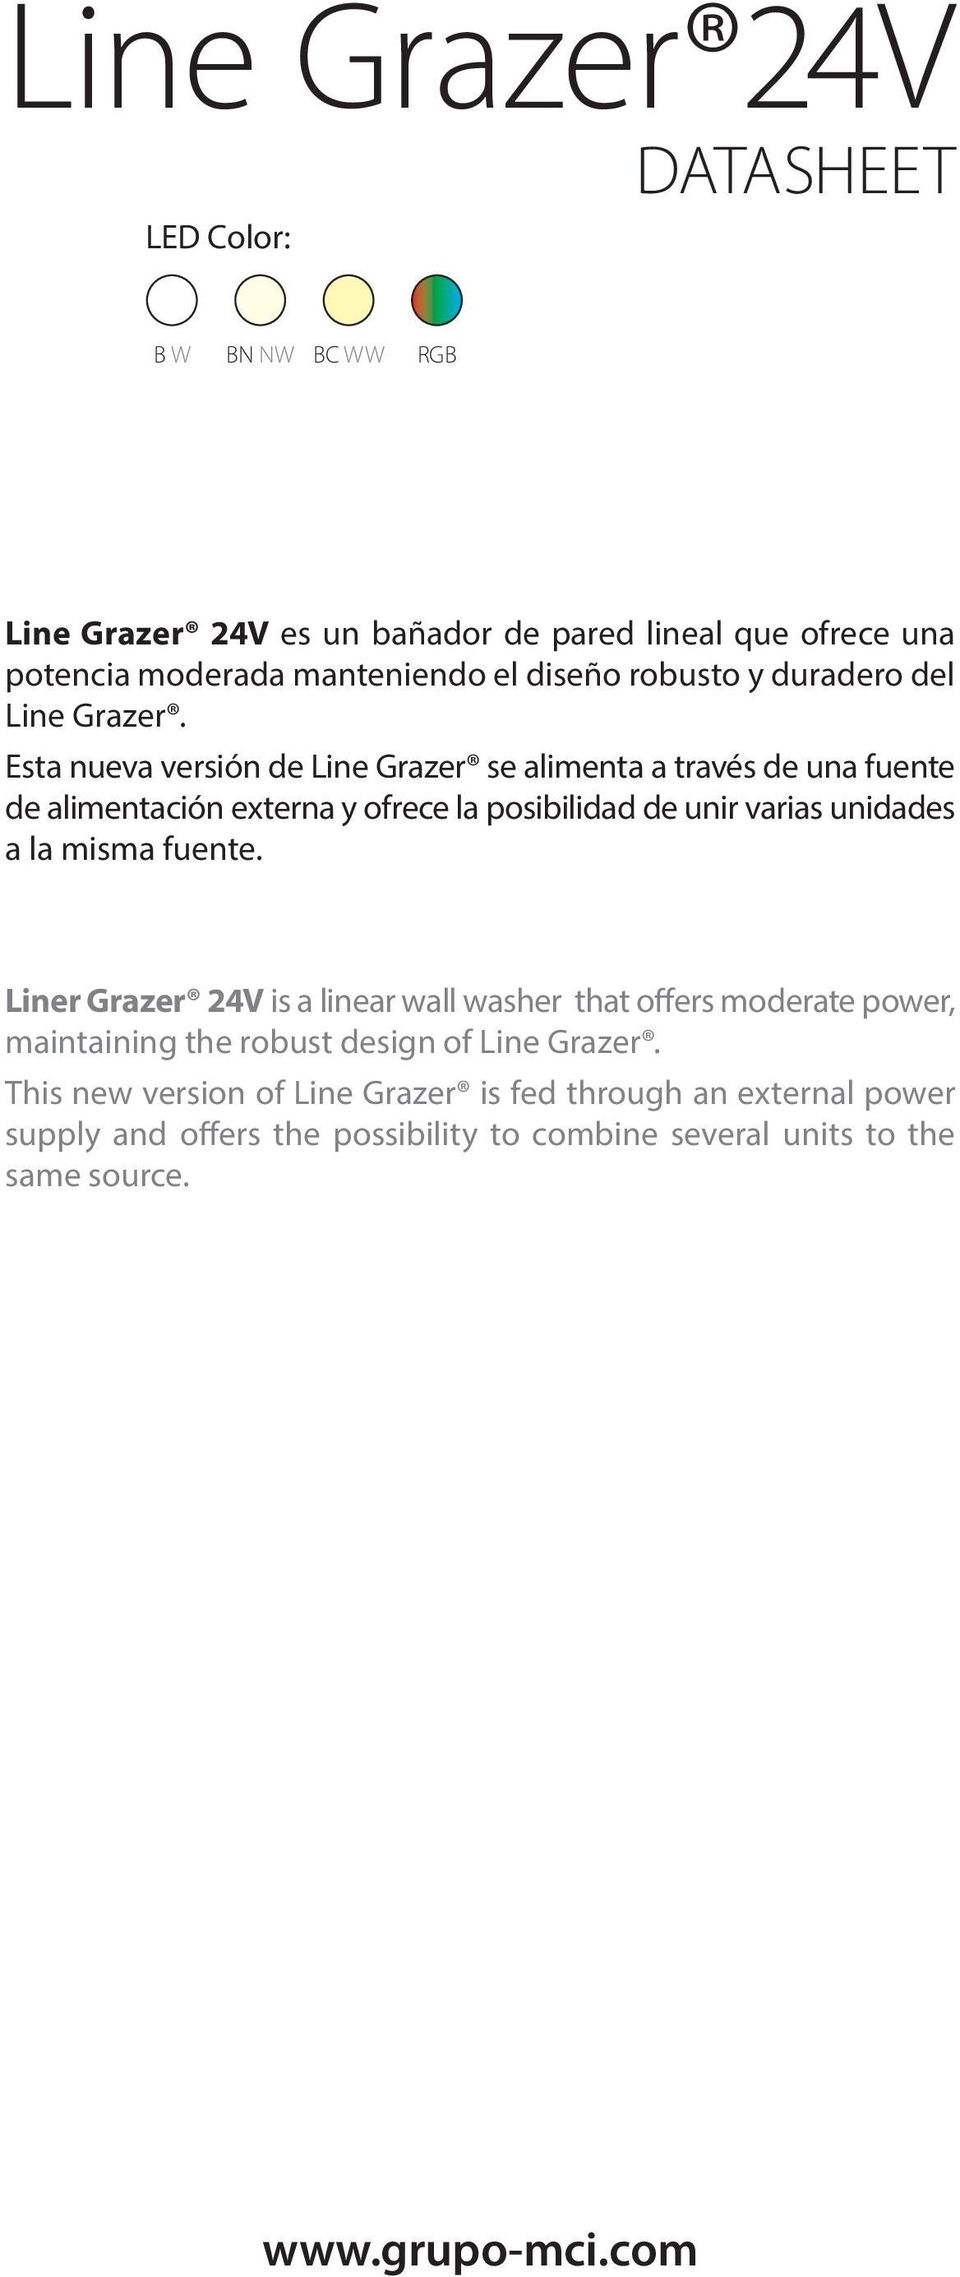 Esta nueva versión de Line Grazer se alimenta a través de una fuente de alimentación externa y ofrece la posibilidad de unir varias unidades a la misma